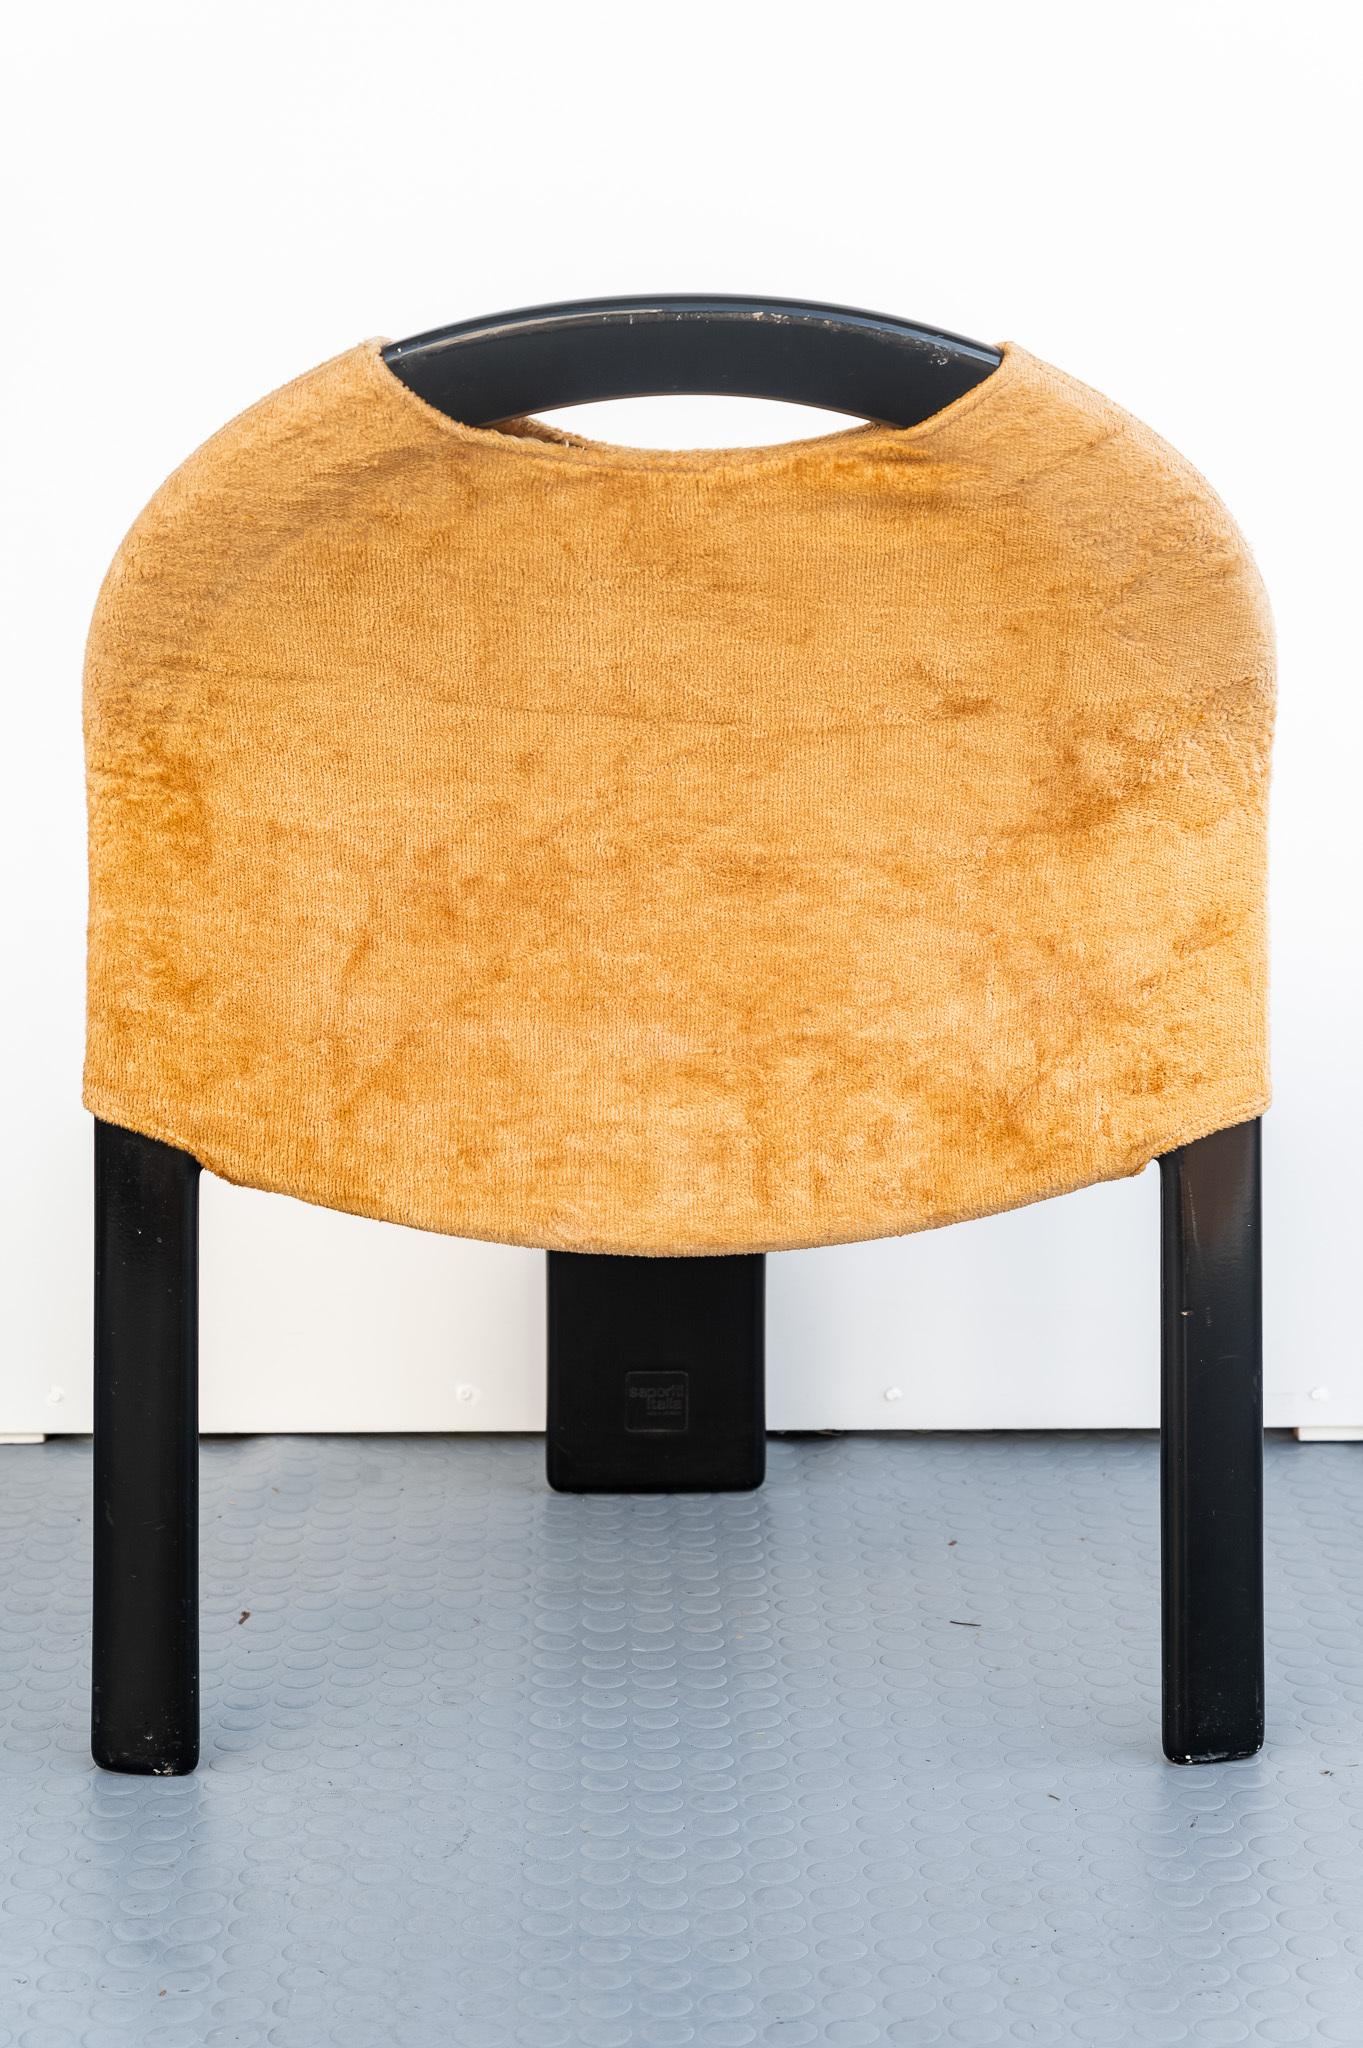 Bellissimo SET di due sedie Giovanni Offredi Saporiti, Anno 1970. 
SET di due sedie disegnate da Giovanni Offredi e prodotte da Saporiti nell'anno 1970. La Struttura è in ABS laccato nero con seduta e schienale in velluto color beige, originale. 
E'